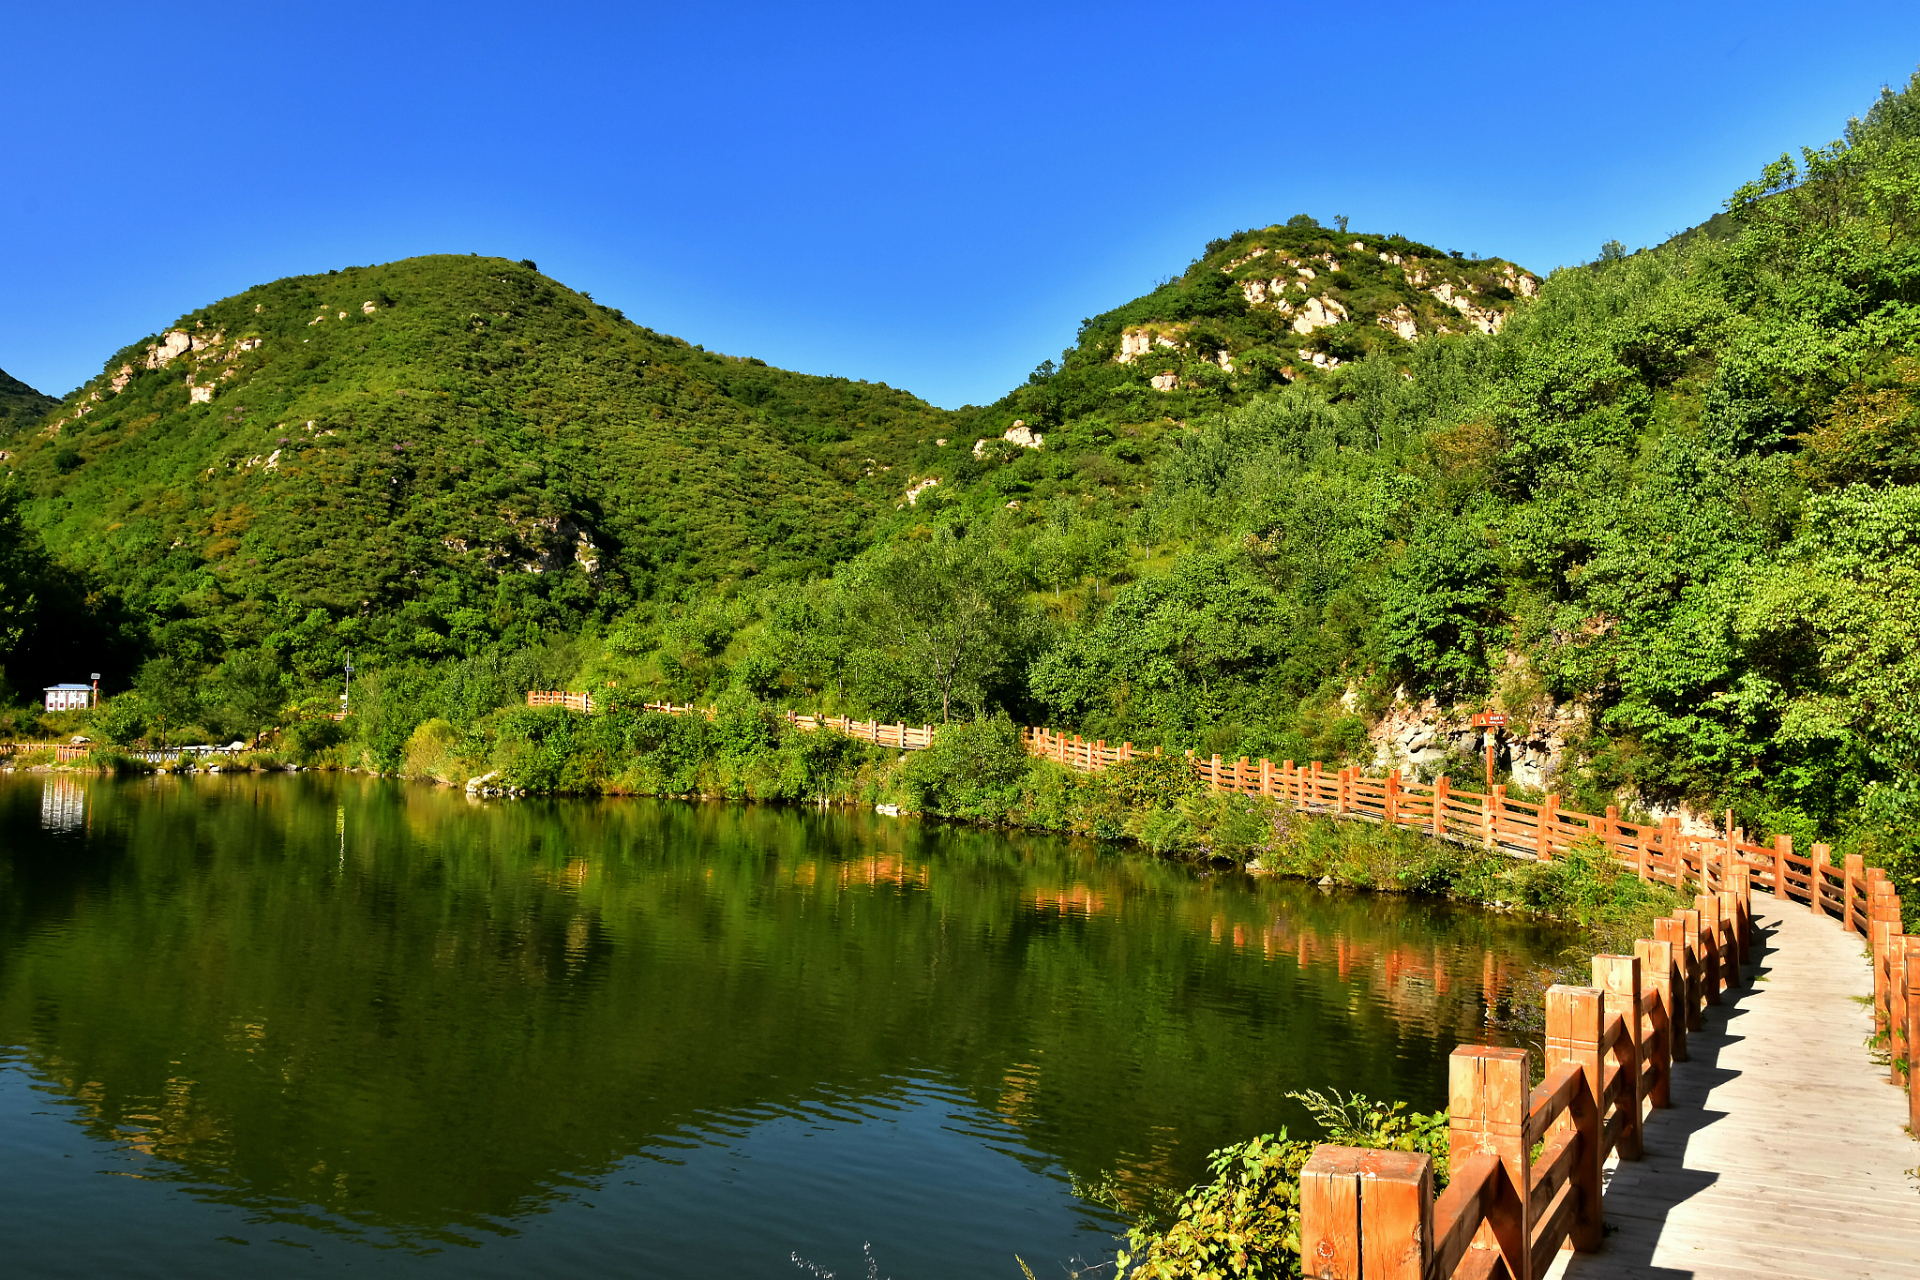 环翠峪风景名胜区位于郑州西南40公里的荥阳市境内,是国家aaa级旅游